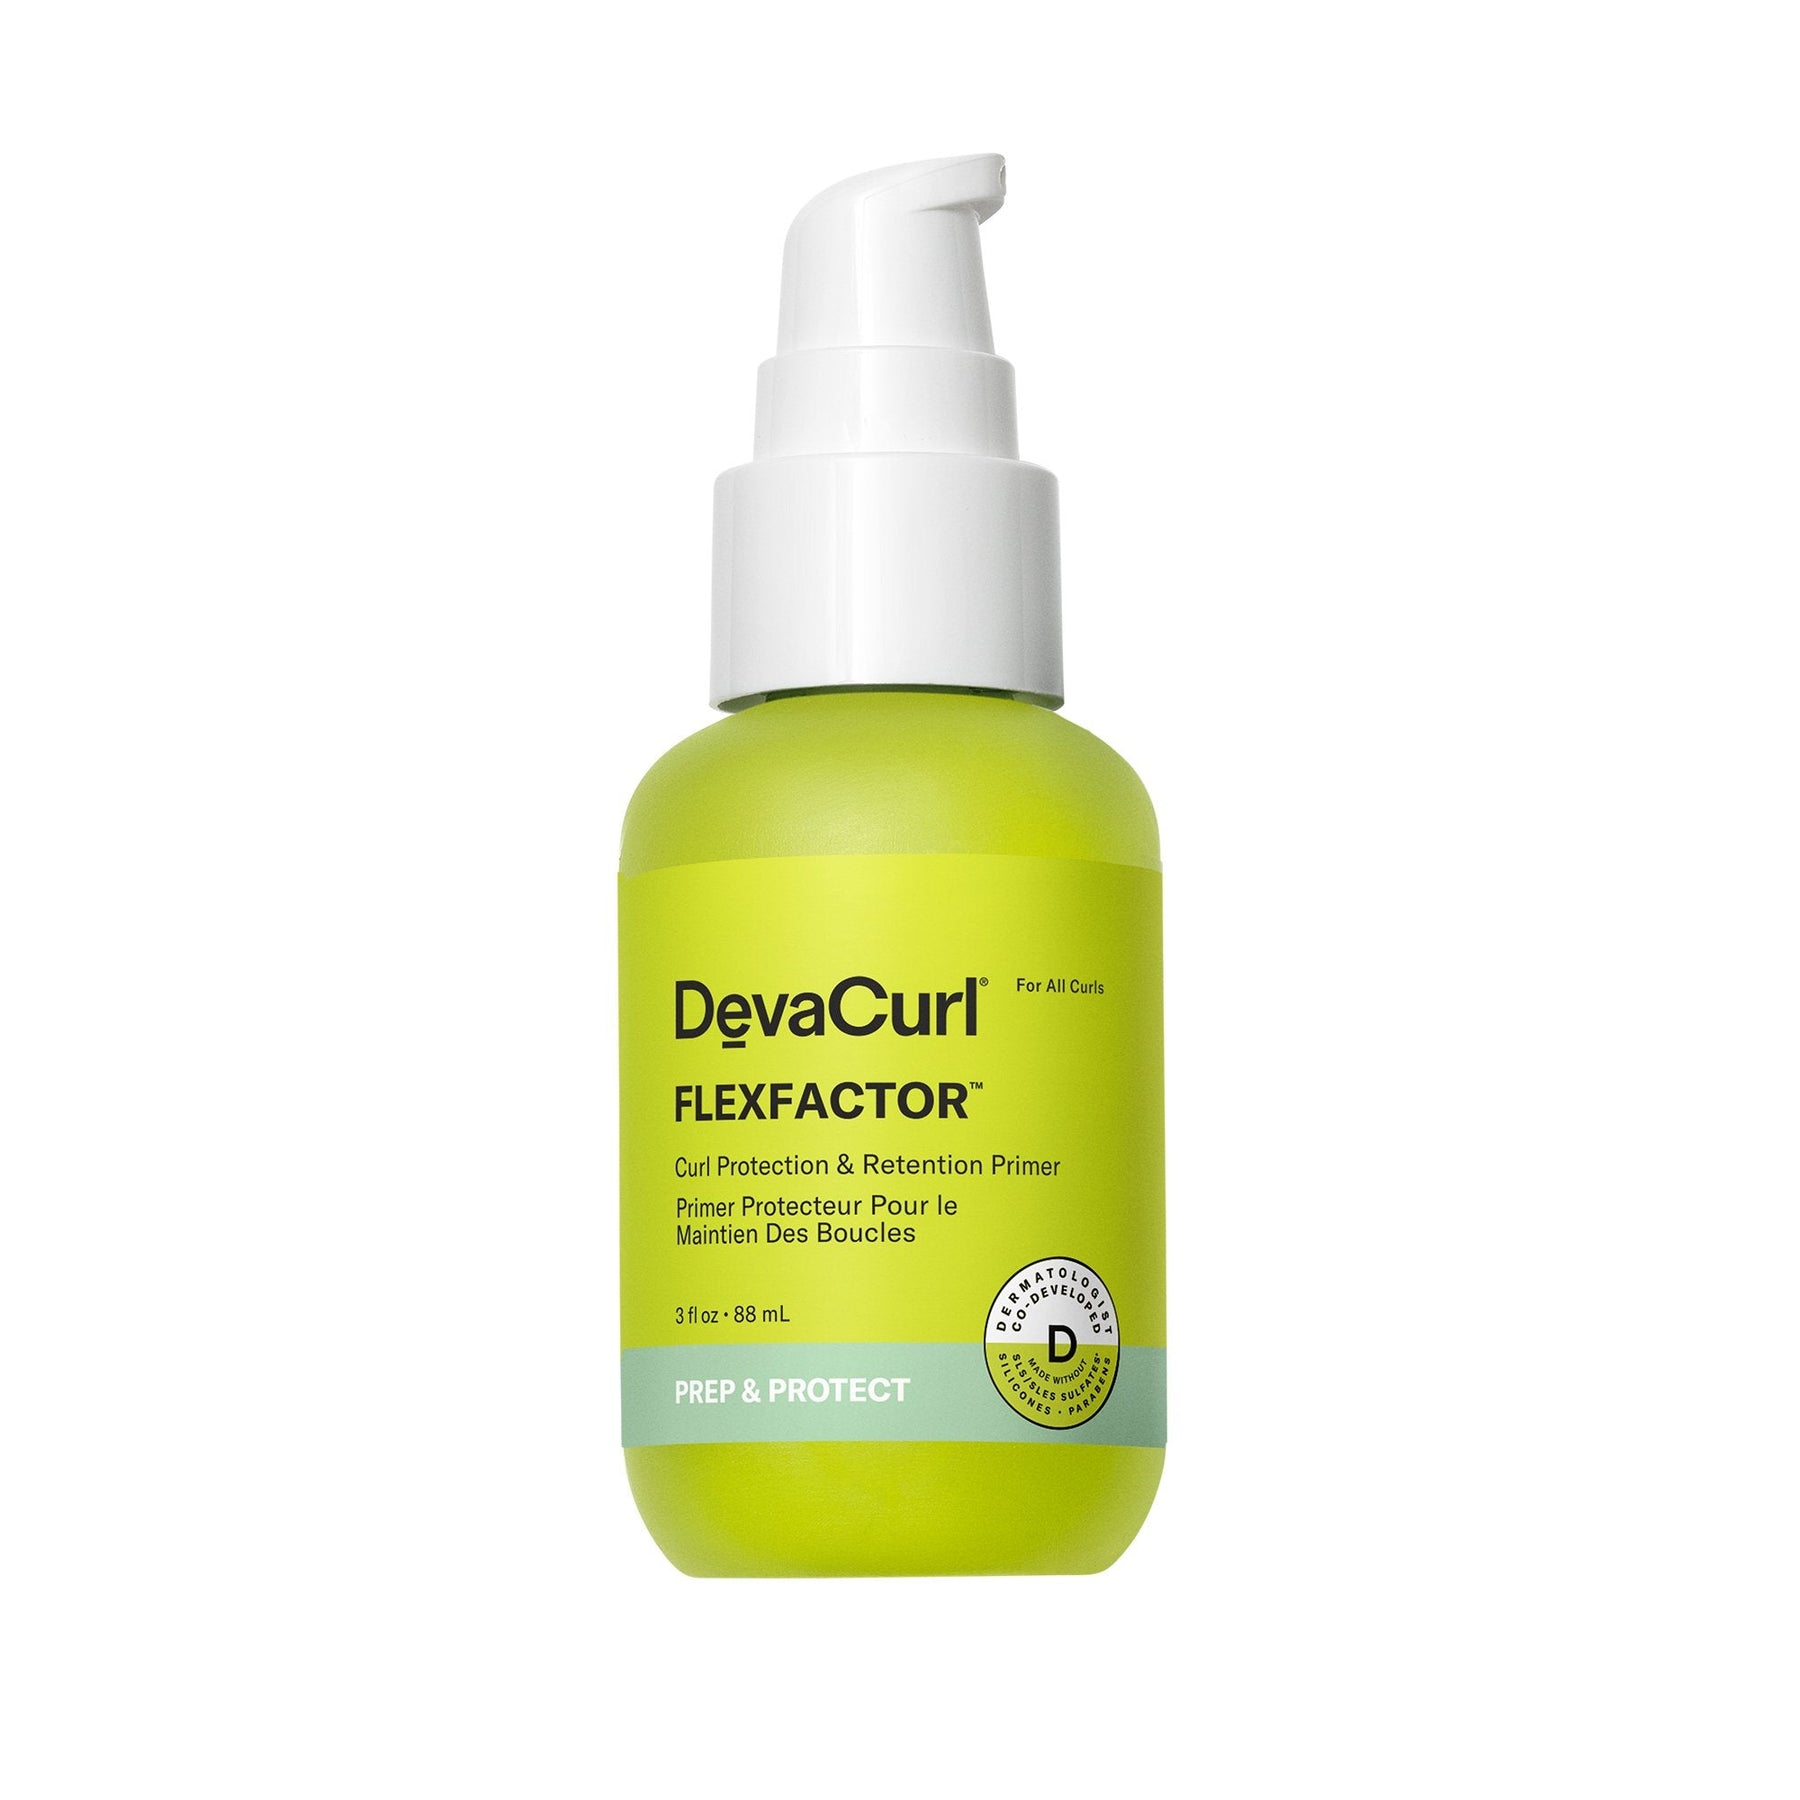 New! DevaCurl FlexFactor - 3oz - by Deva Curl |ProCare Outlet|